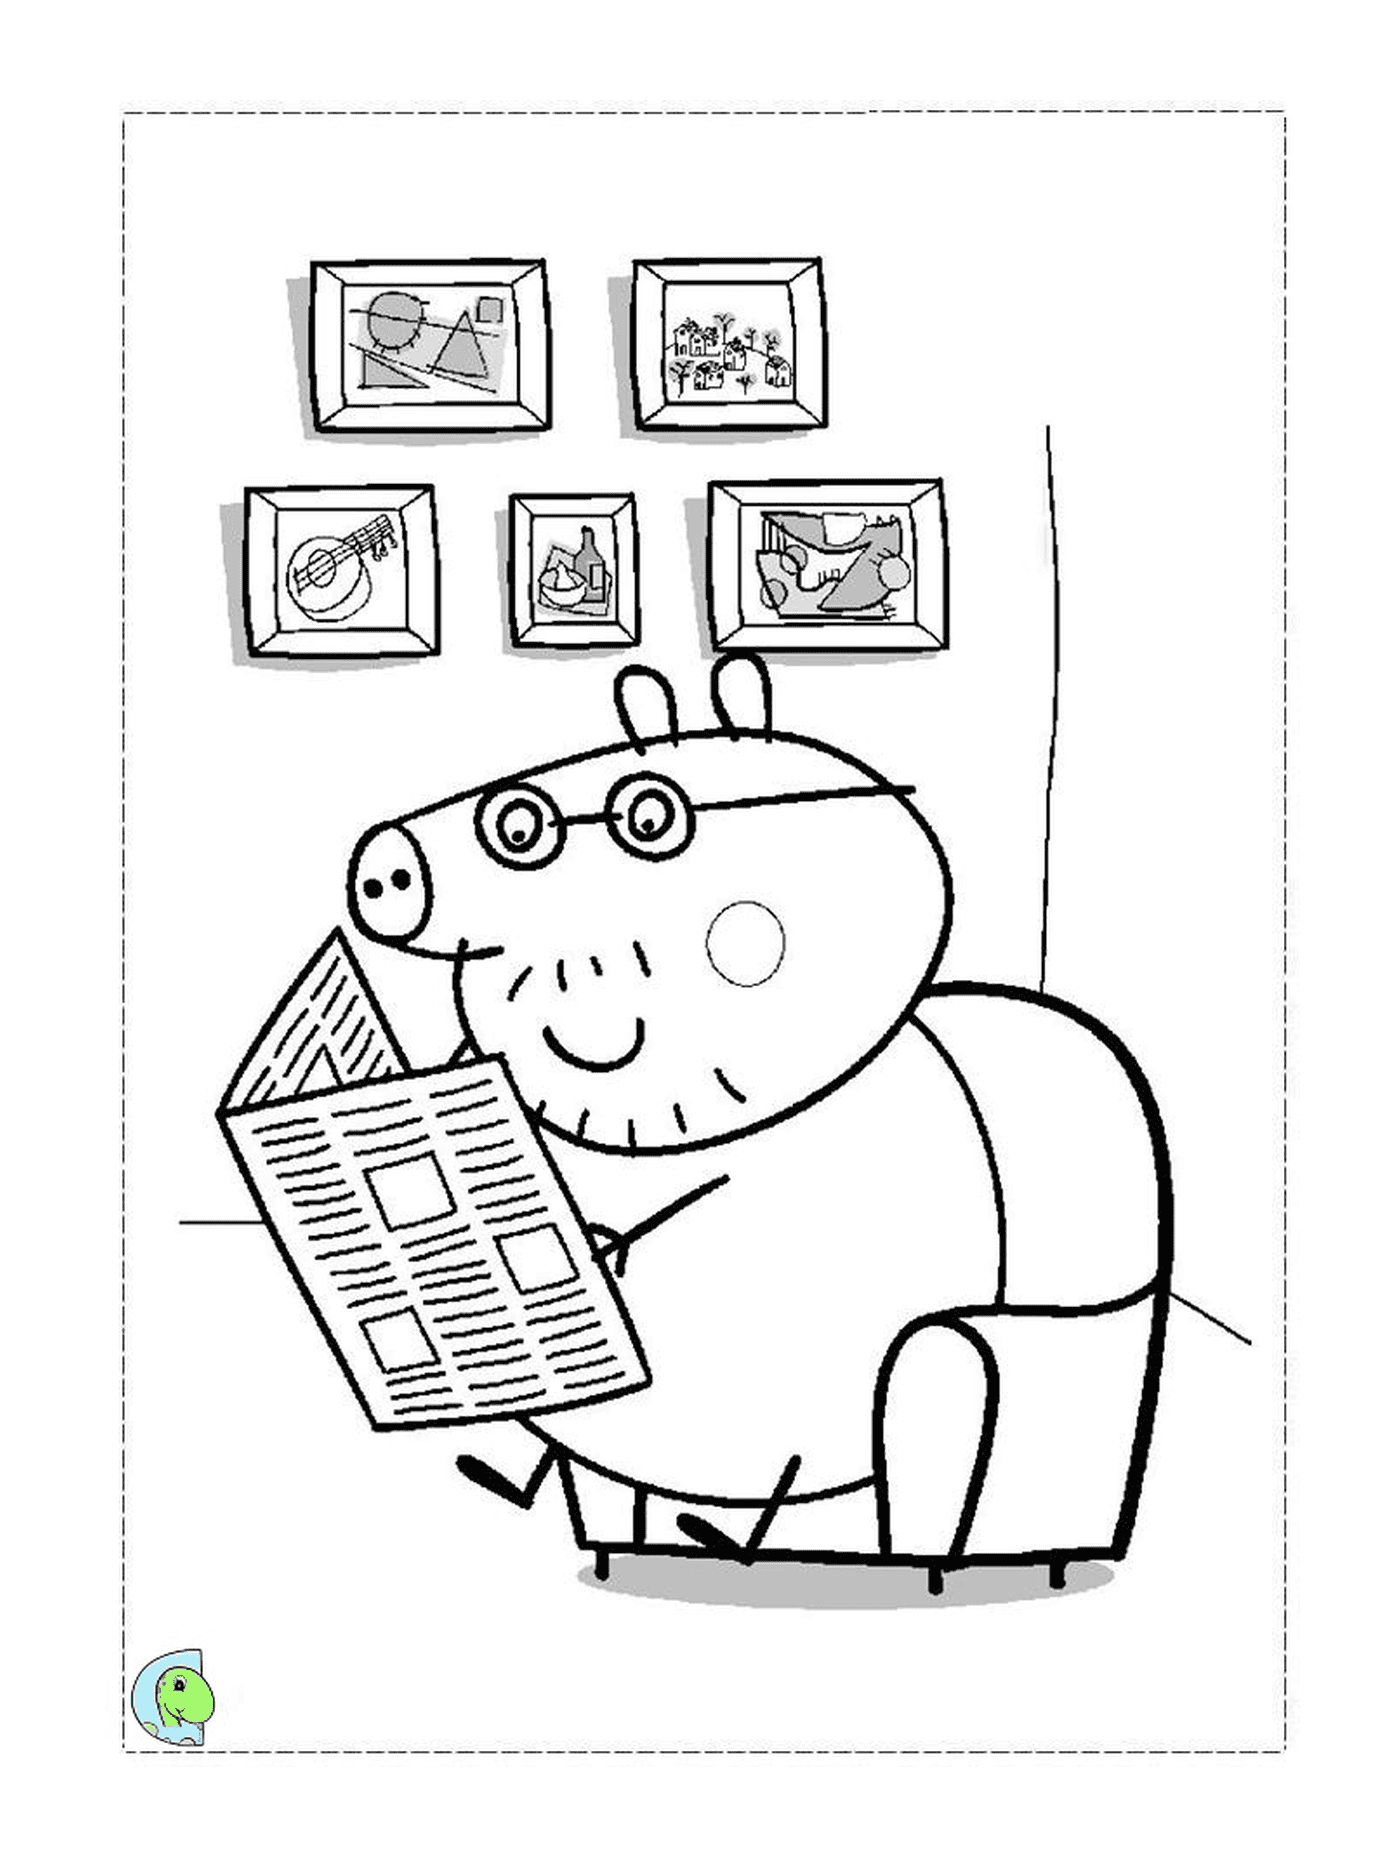  पेप्पा पिपर सूअर एक अख़बार पढ़ रहा है 